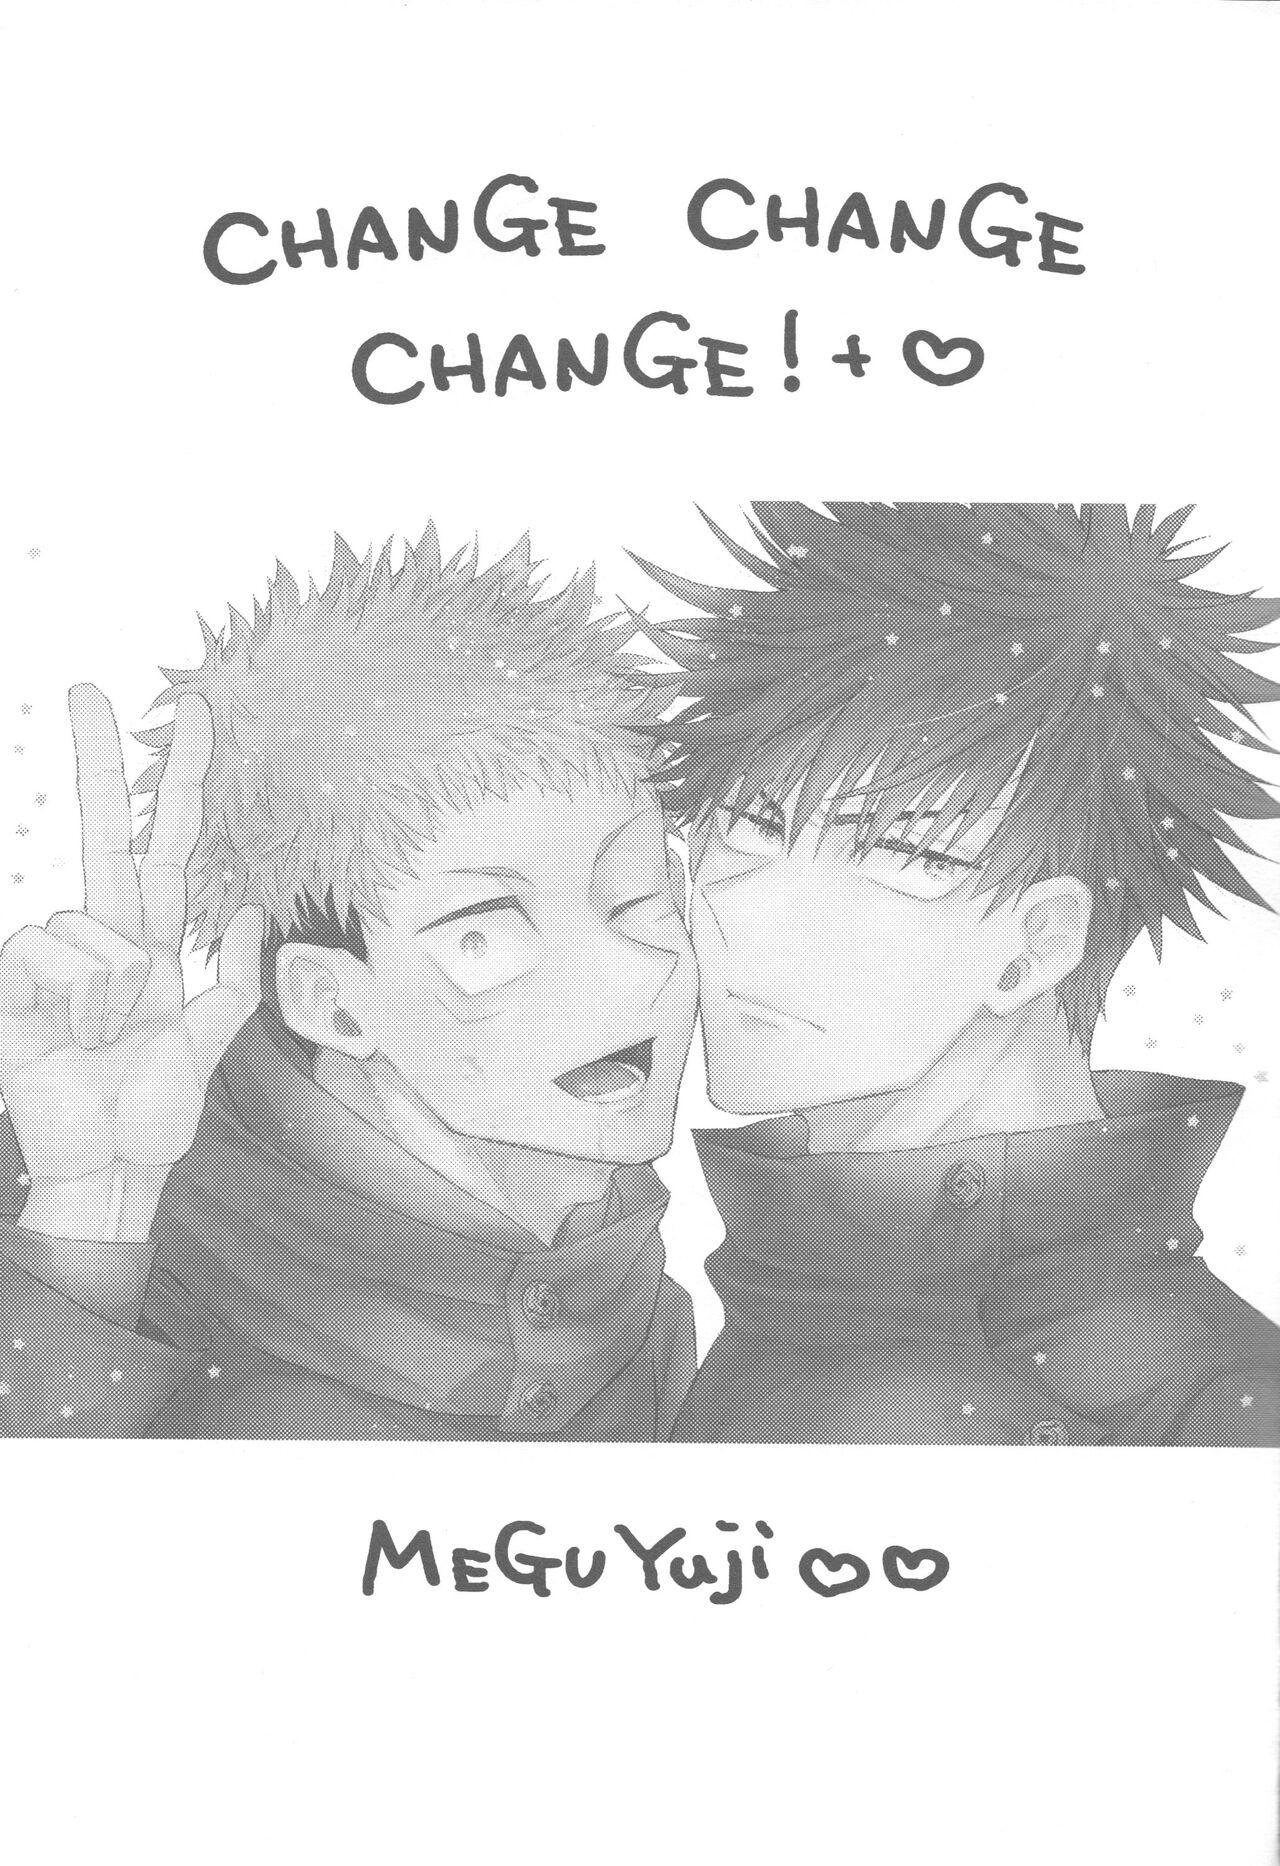 CHANGE CHANGE CHANGE + 1